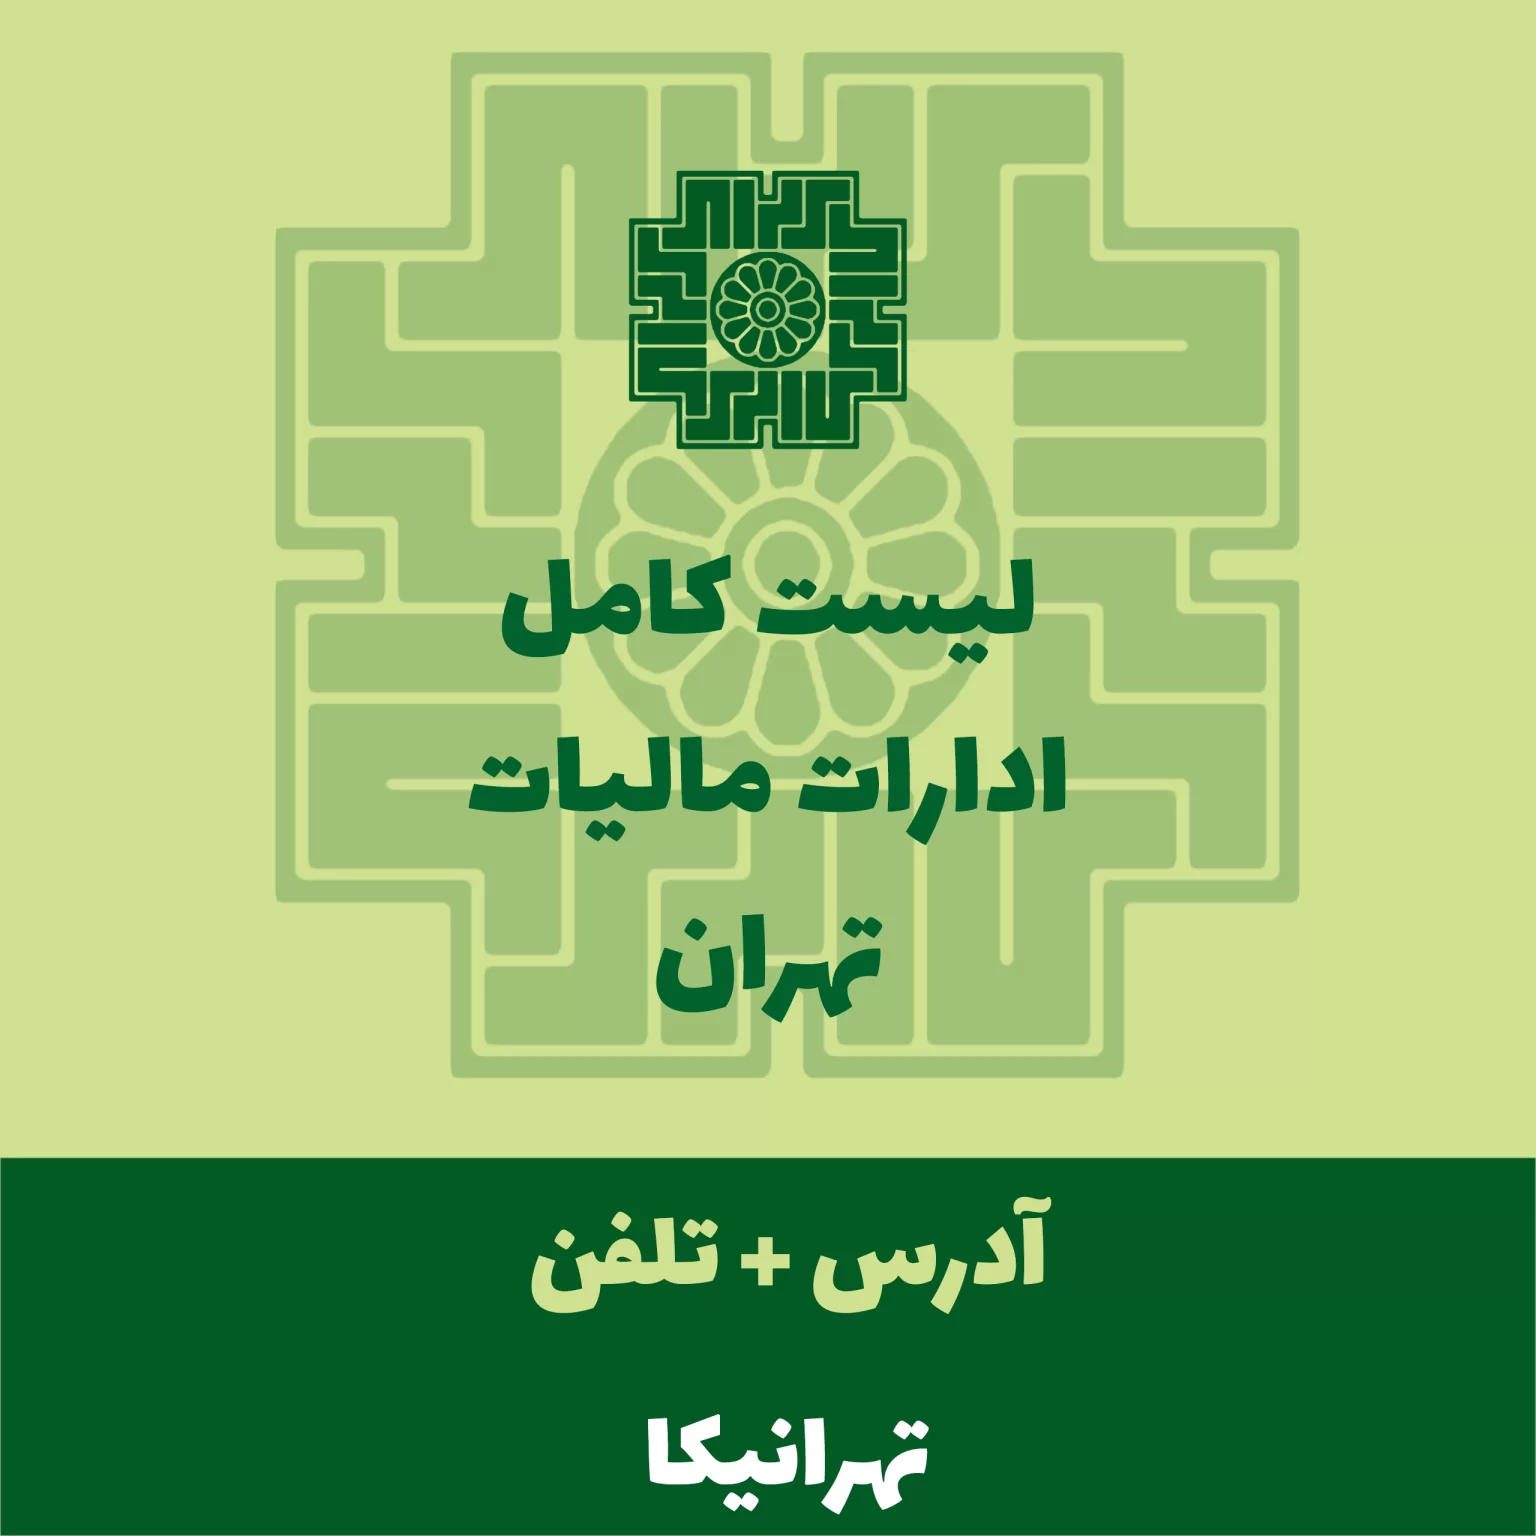 ادارات مالیات تهران